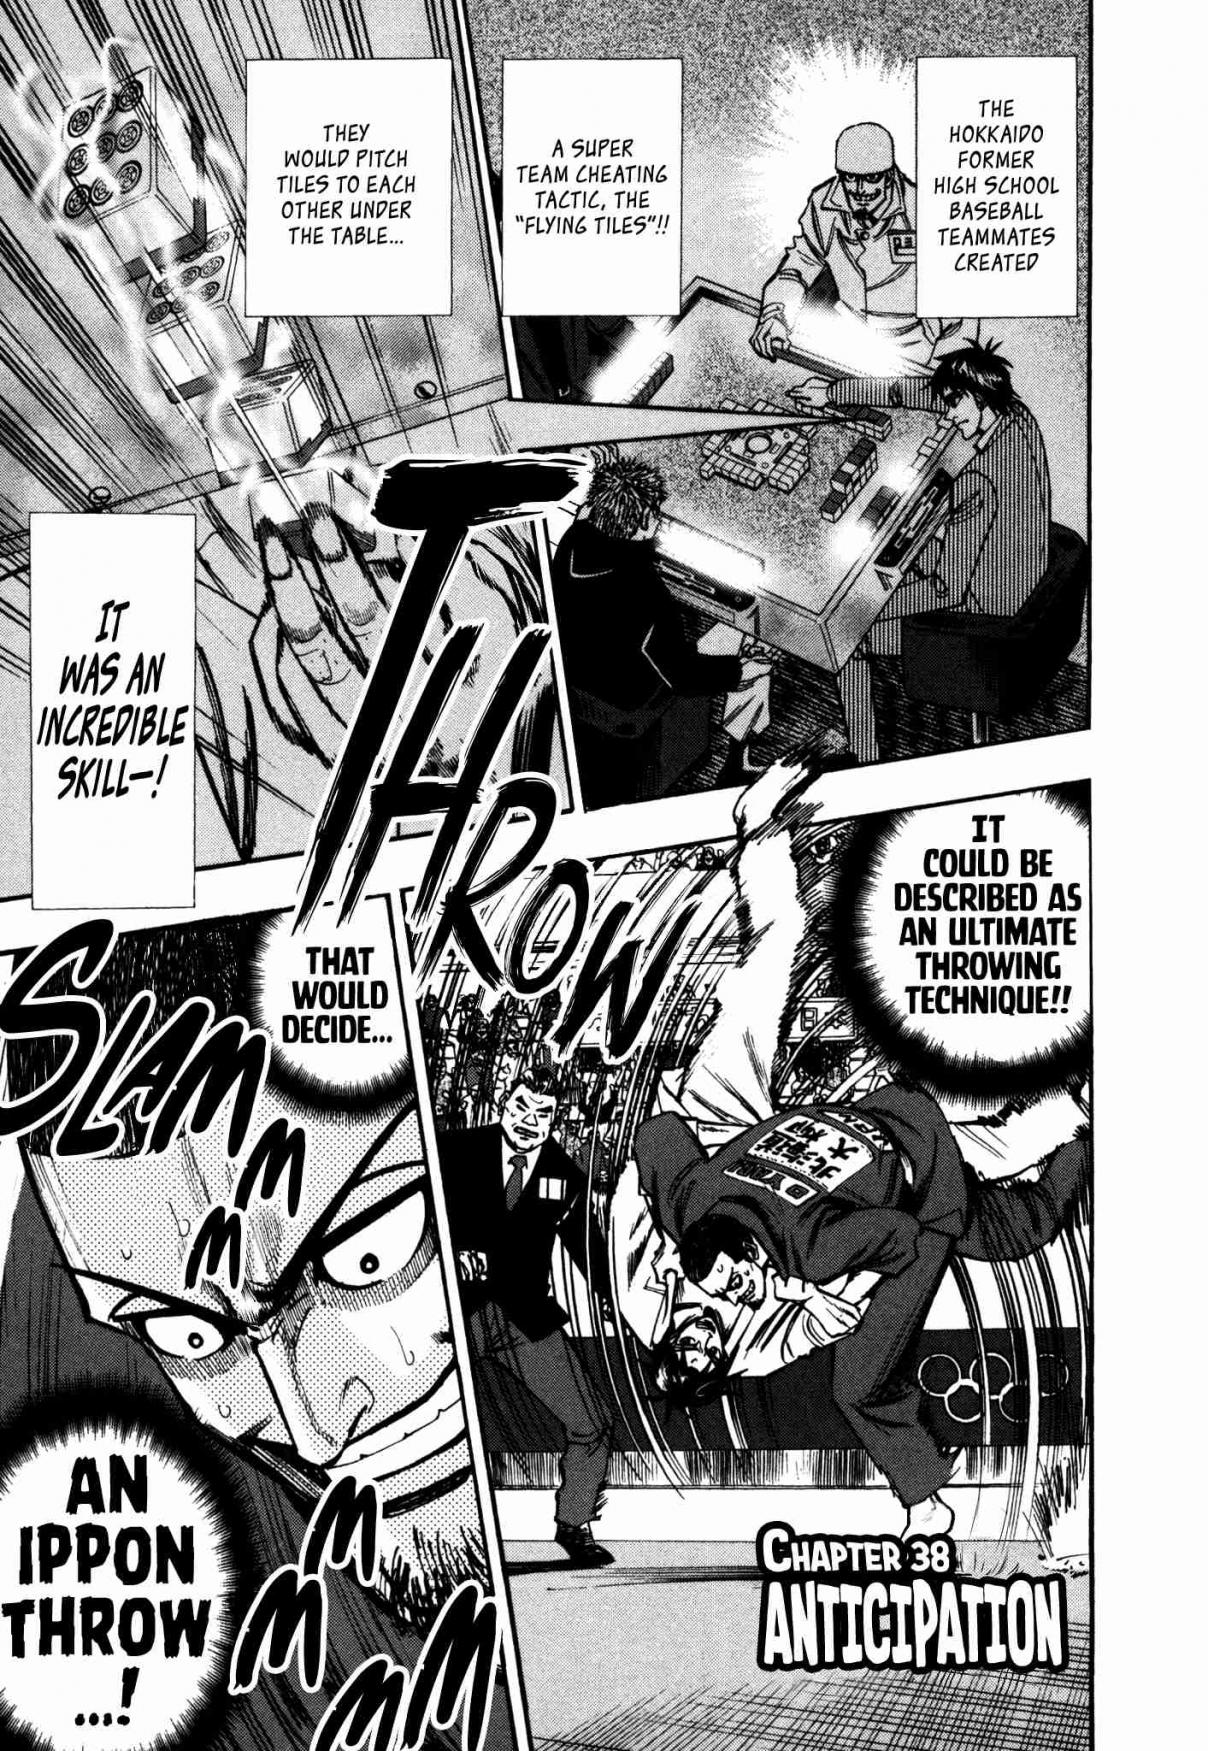 Hero: Akagi no Ishi wo Tsugu Otoko Vol. 5 Ch. 38 Anticipation